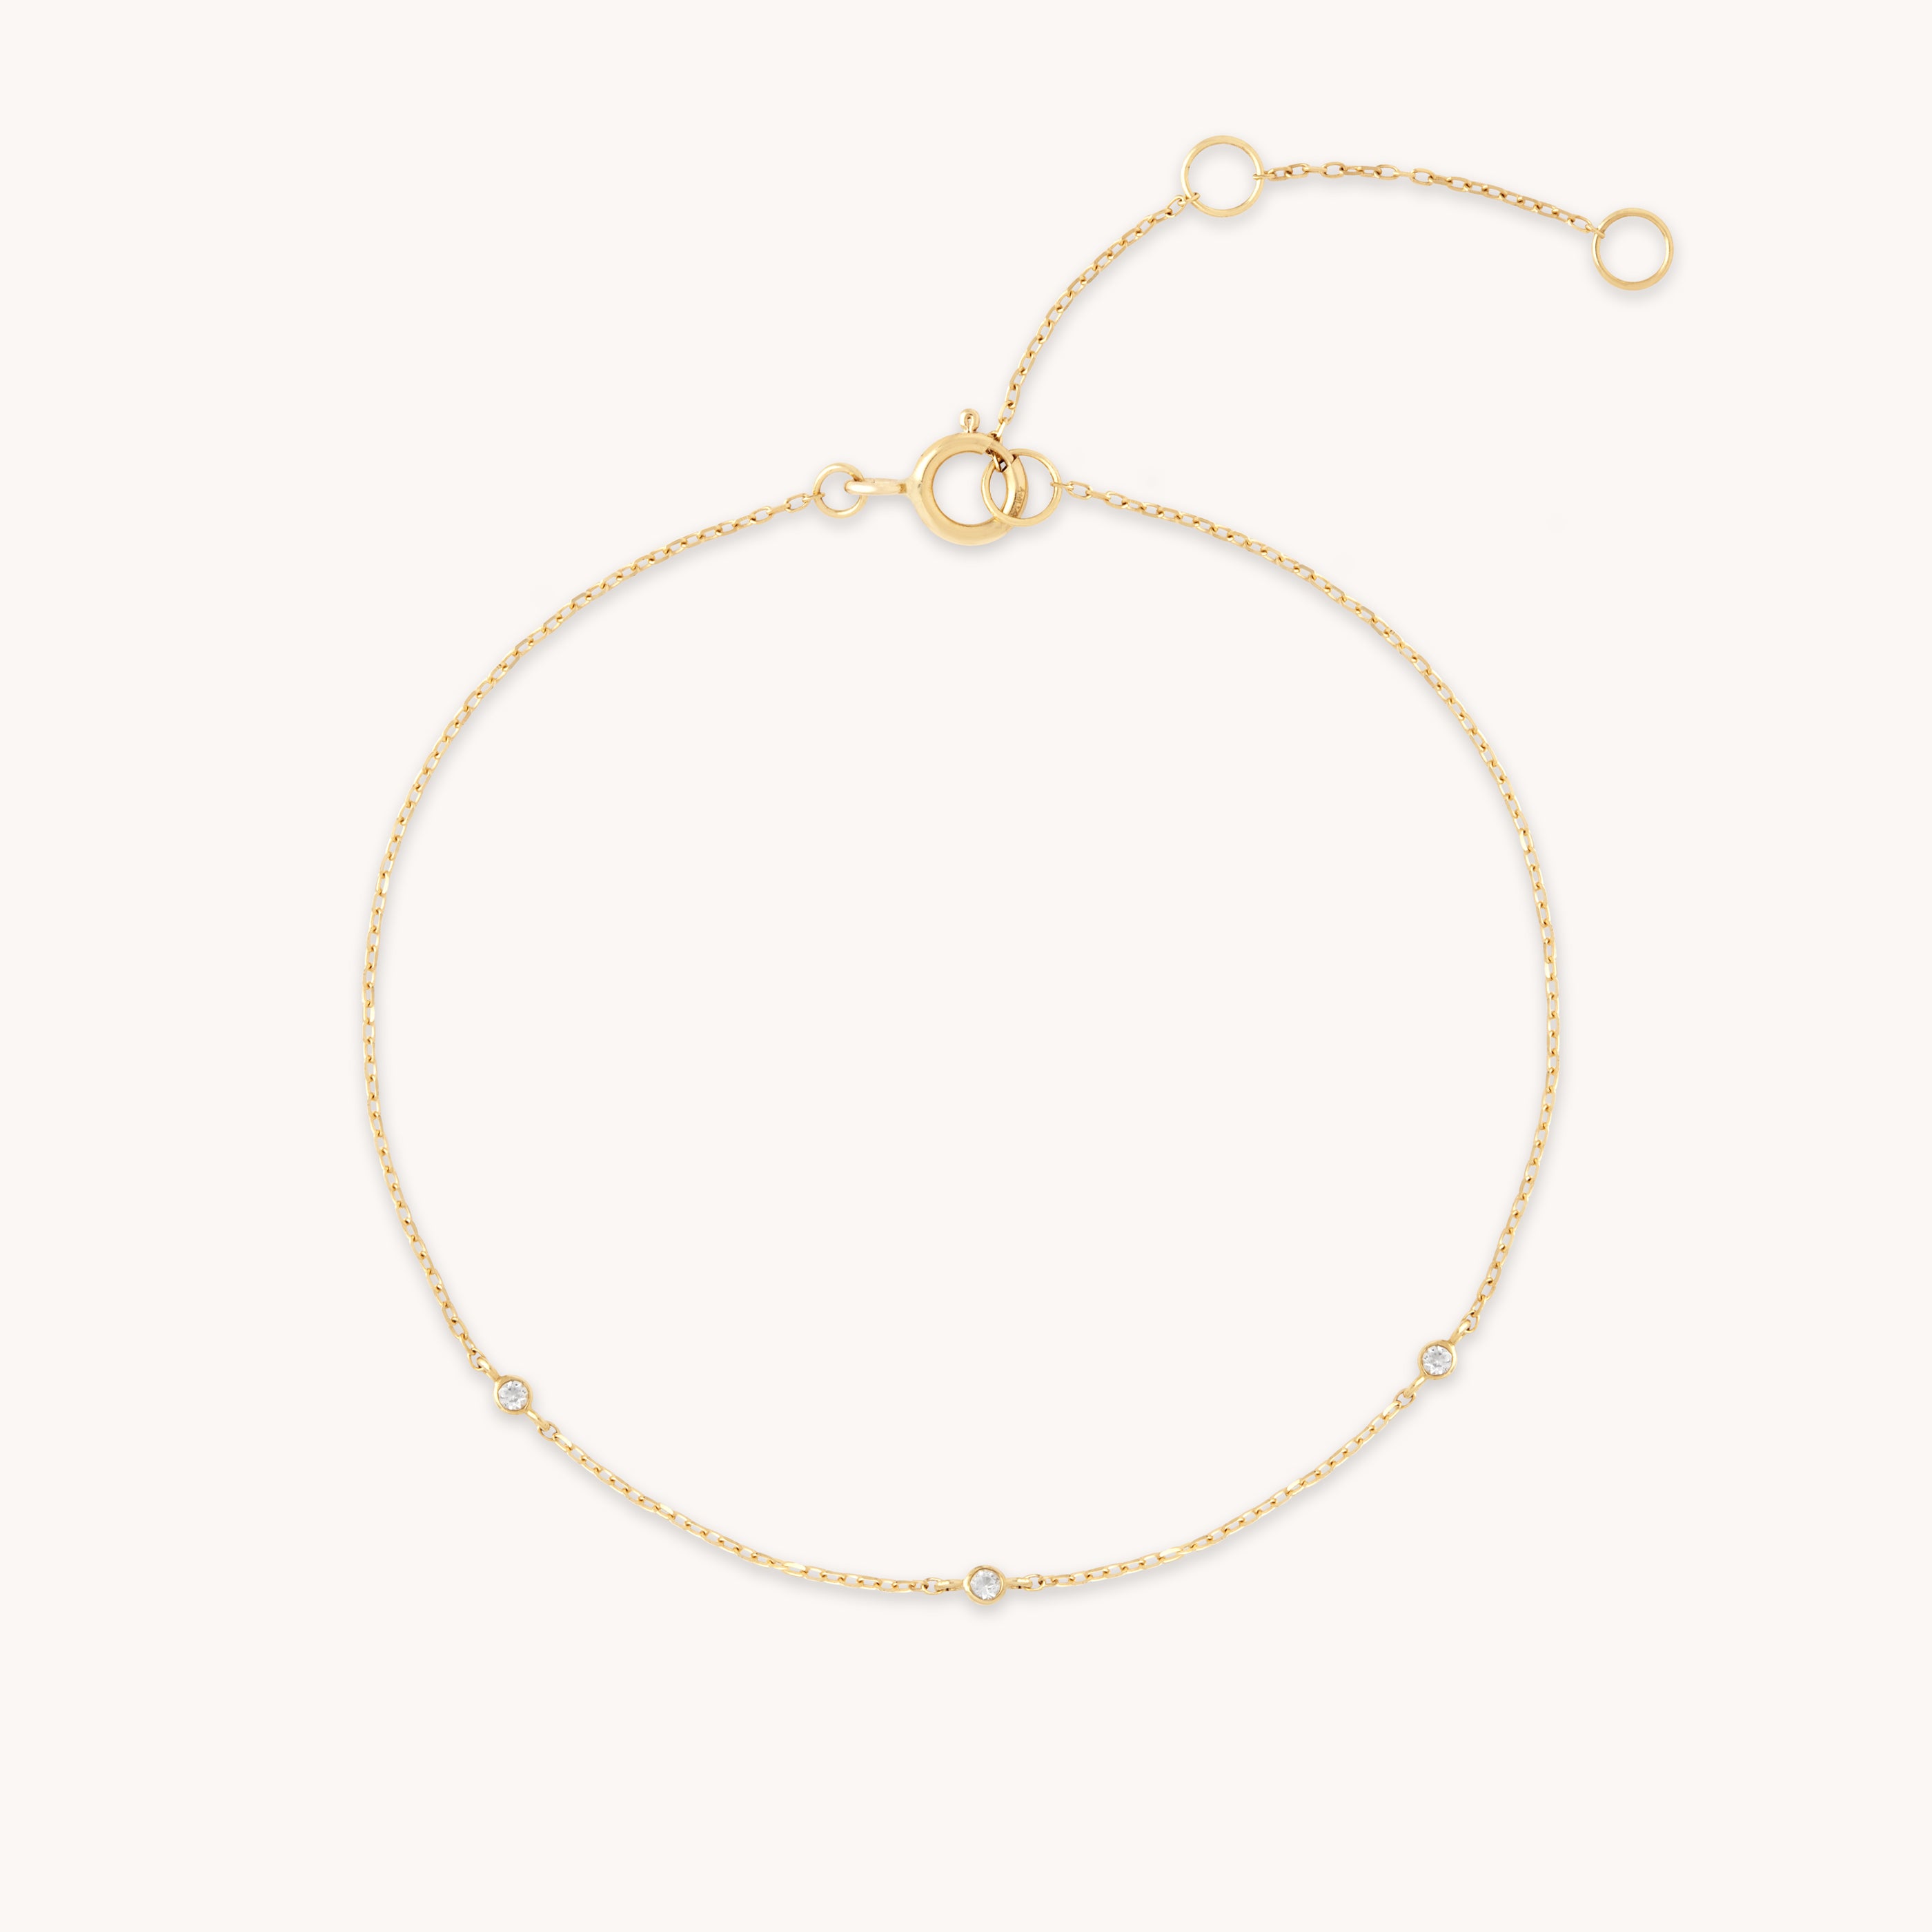 White Topaz Solid Gold Charm Bracelet | Astrid & Miyu Bracelets